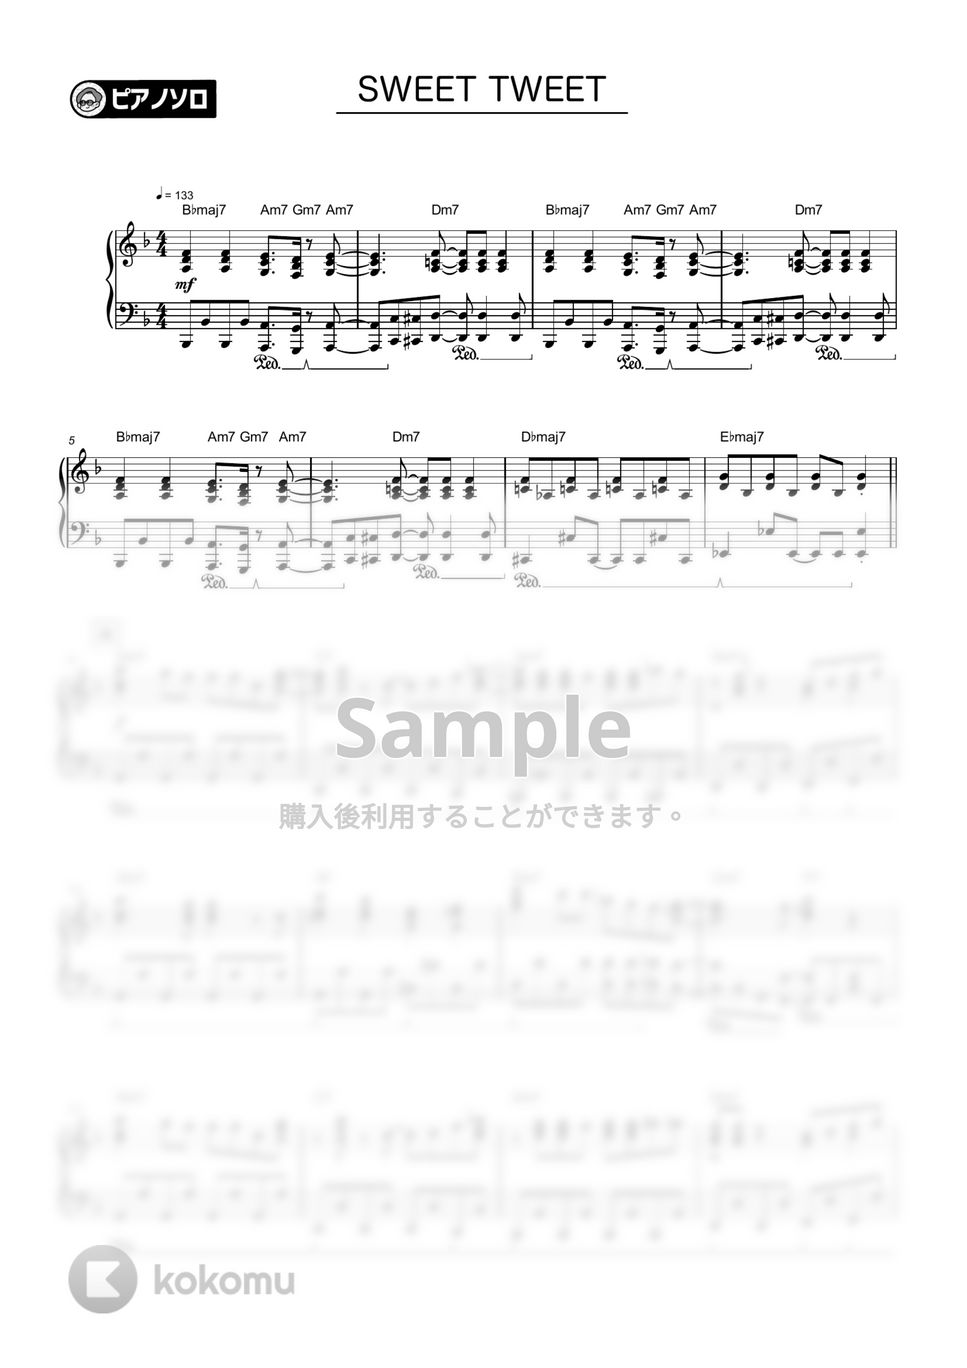 Official髭男dism - SWEET TWEET by シータピアノ